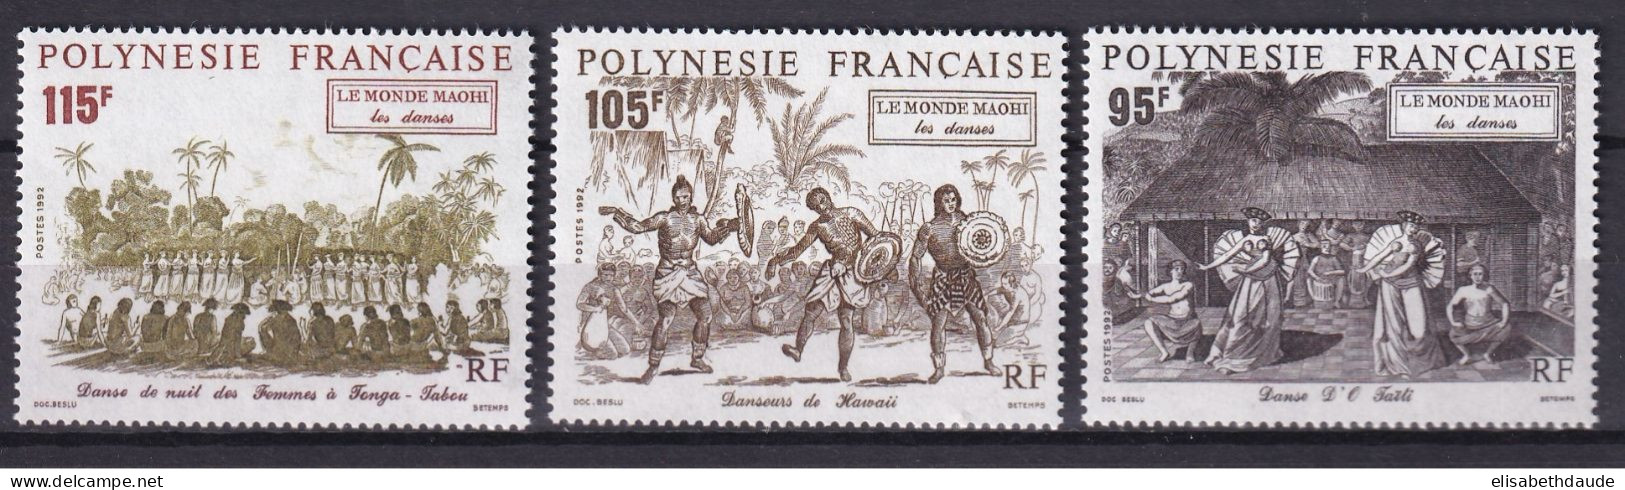 POLYNESIE - 1992 - PORT GRATUIT A PARTIR DE 5 EUR. D'ACHAT - YVERT N° 410/412 ** MNH - DANSES - COTE = 7.65 EUR. - Ongebruikt